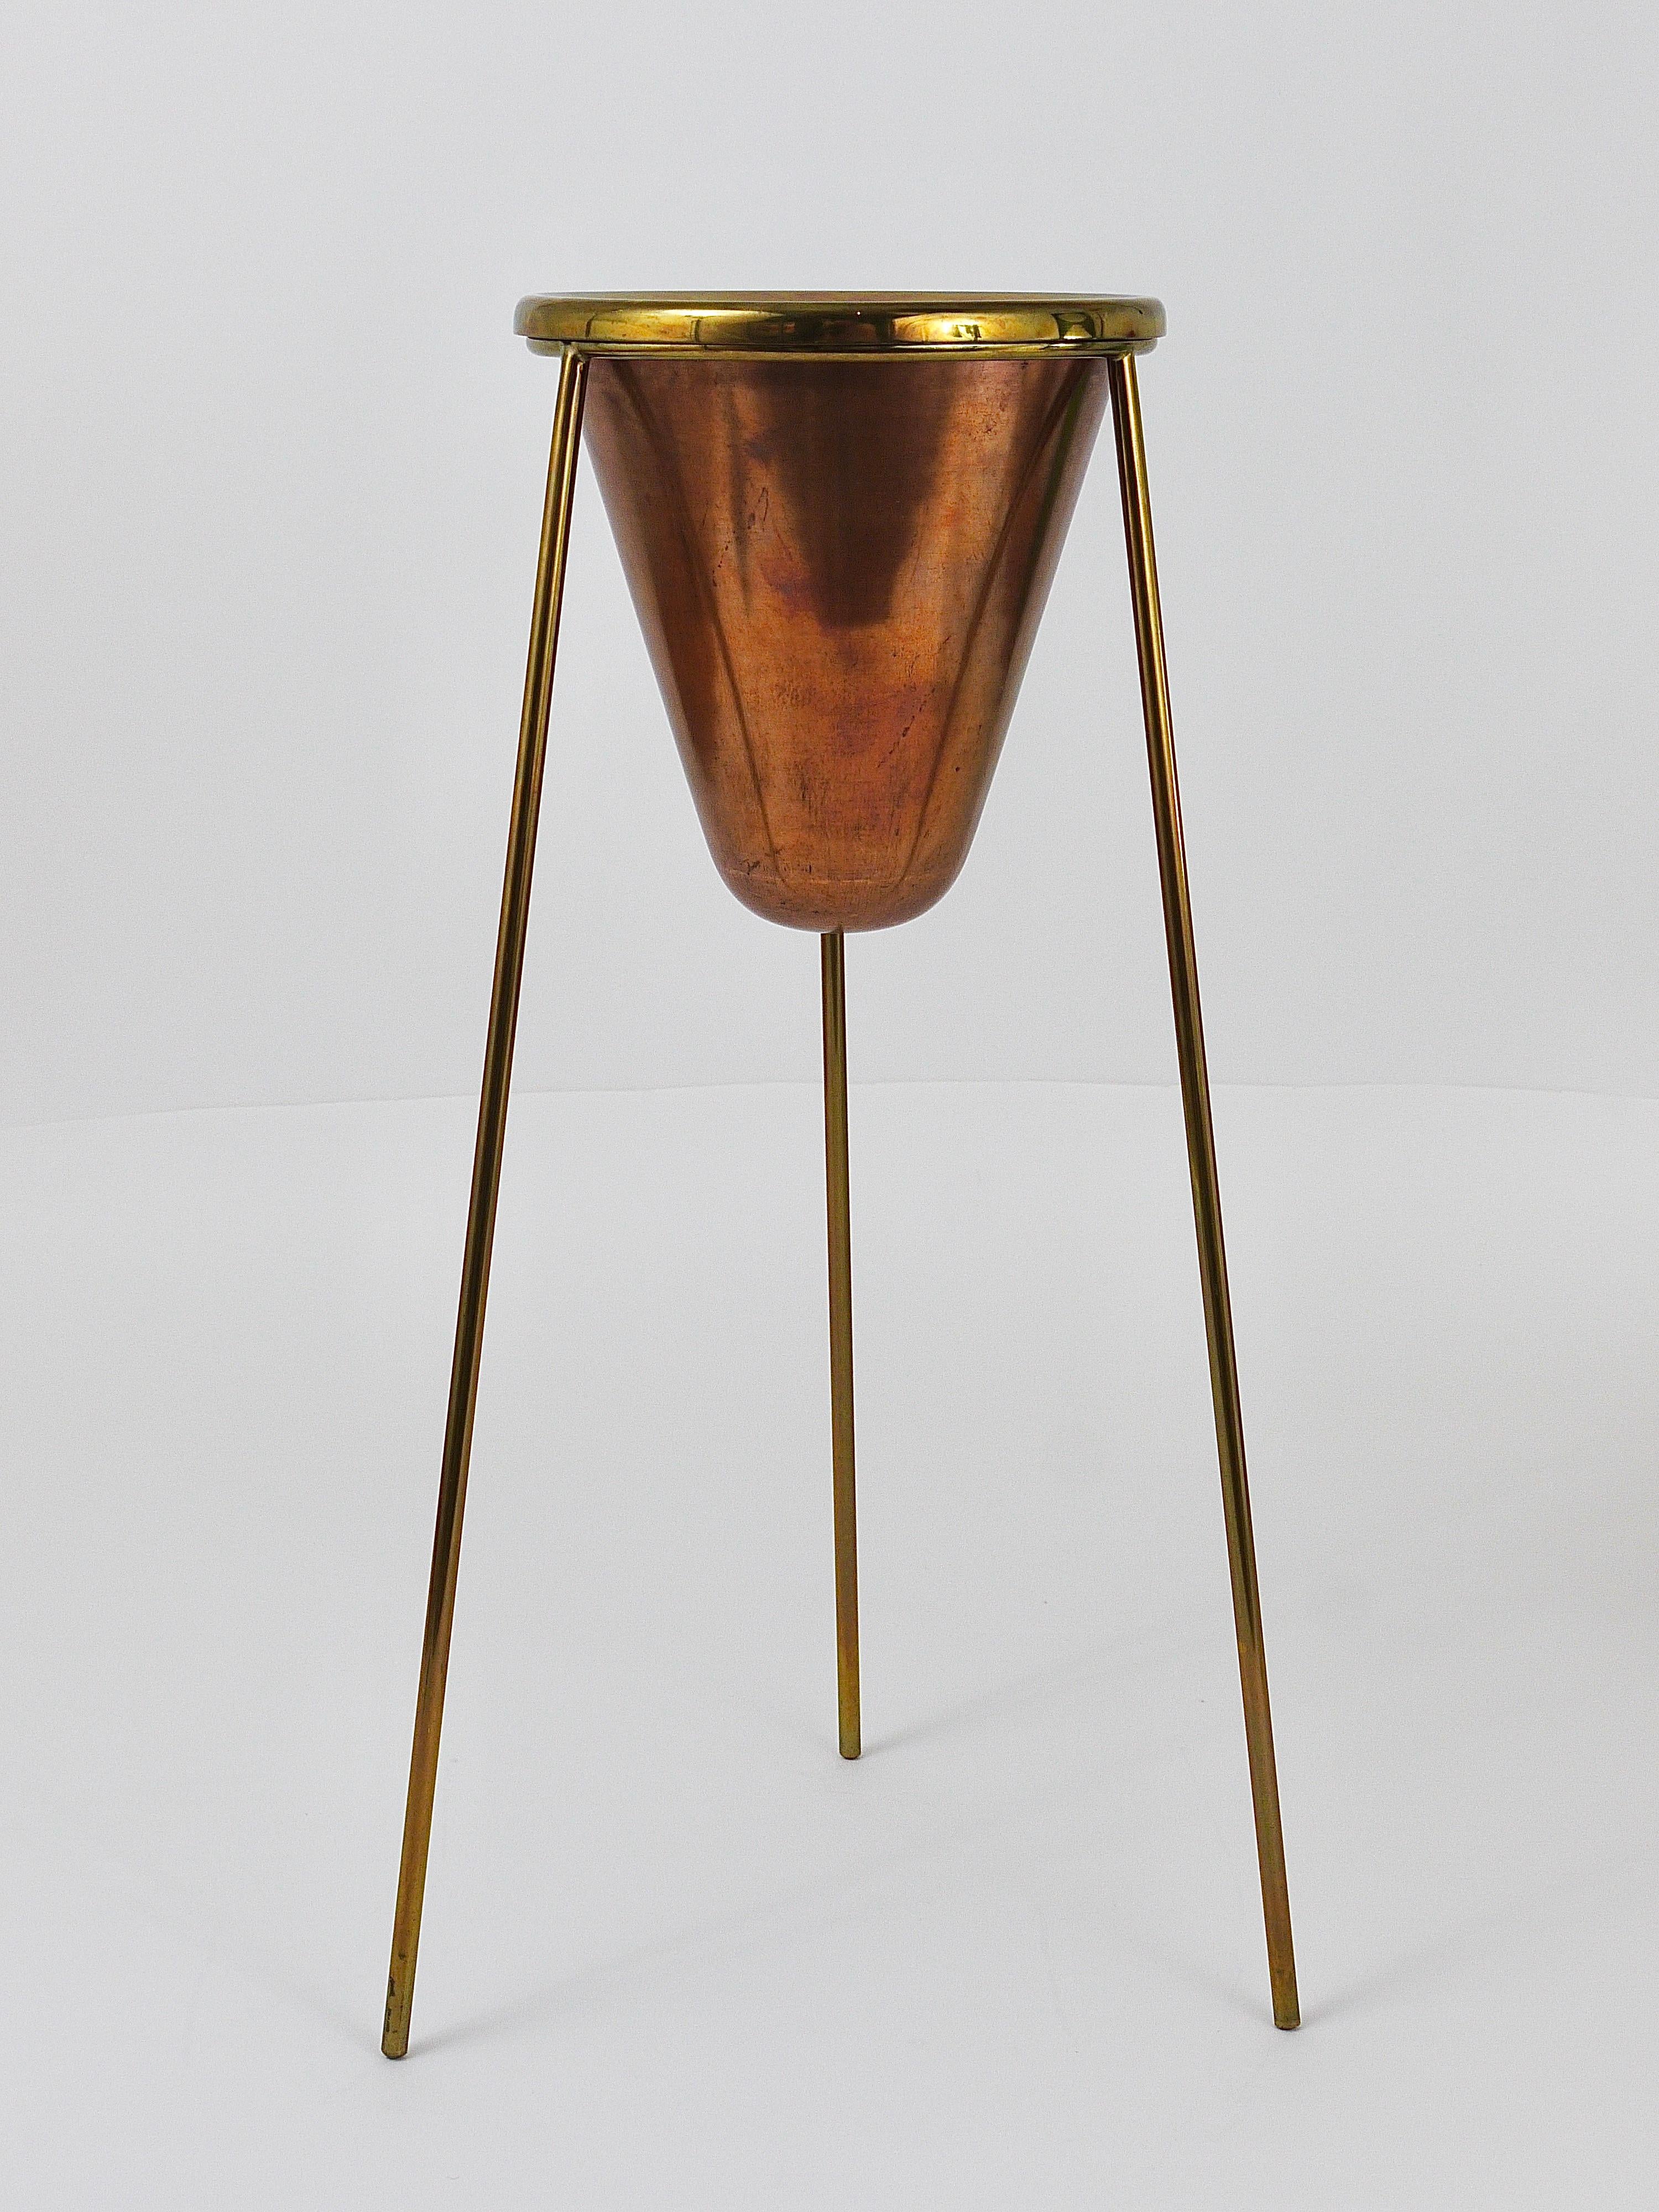 Rare Carl Aubock Copper & Brass Tripod Floor Ashtray, Austria, 1950s For Sale 7